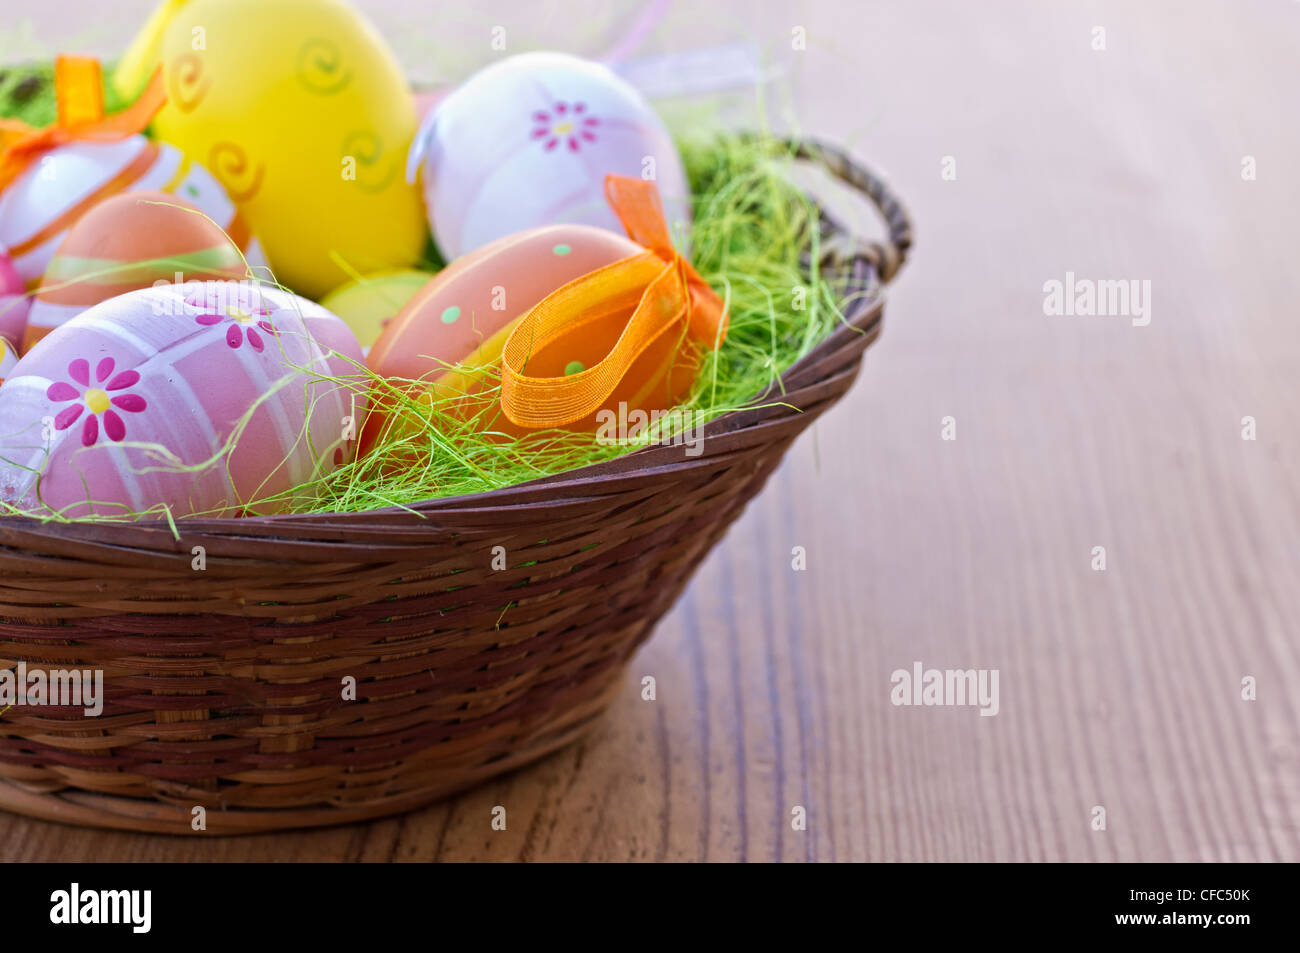 Les œufs de pâques avec beaucoup de lumière et de couleurs étonnantes Banque D'Images